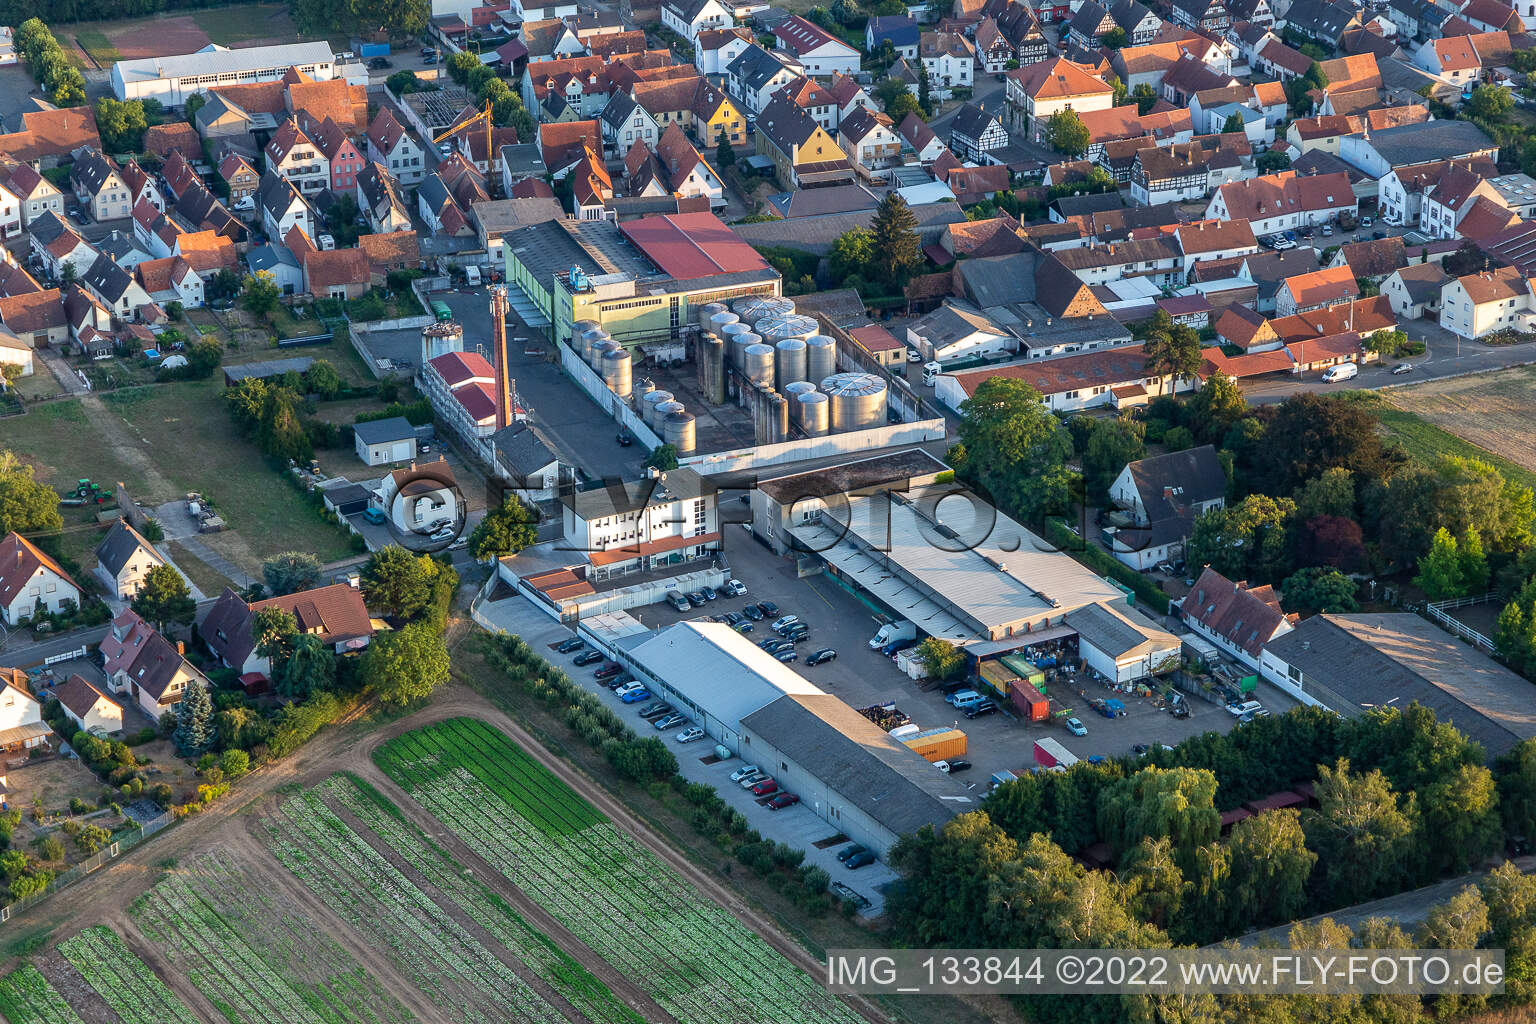 Günters Garage KFZ-Werkstatt,  Löwen-Brennerei GmbH in Lustadt im Bundesland Rheinland-Pfalz, Deutschland